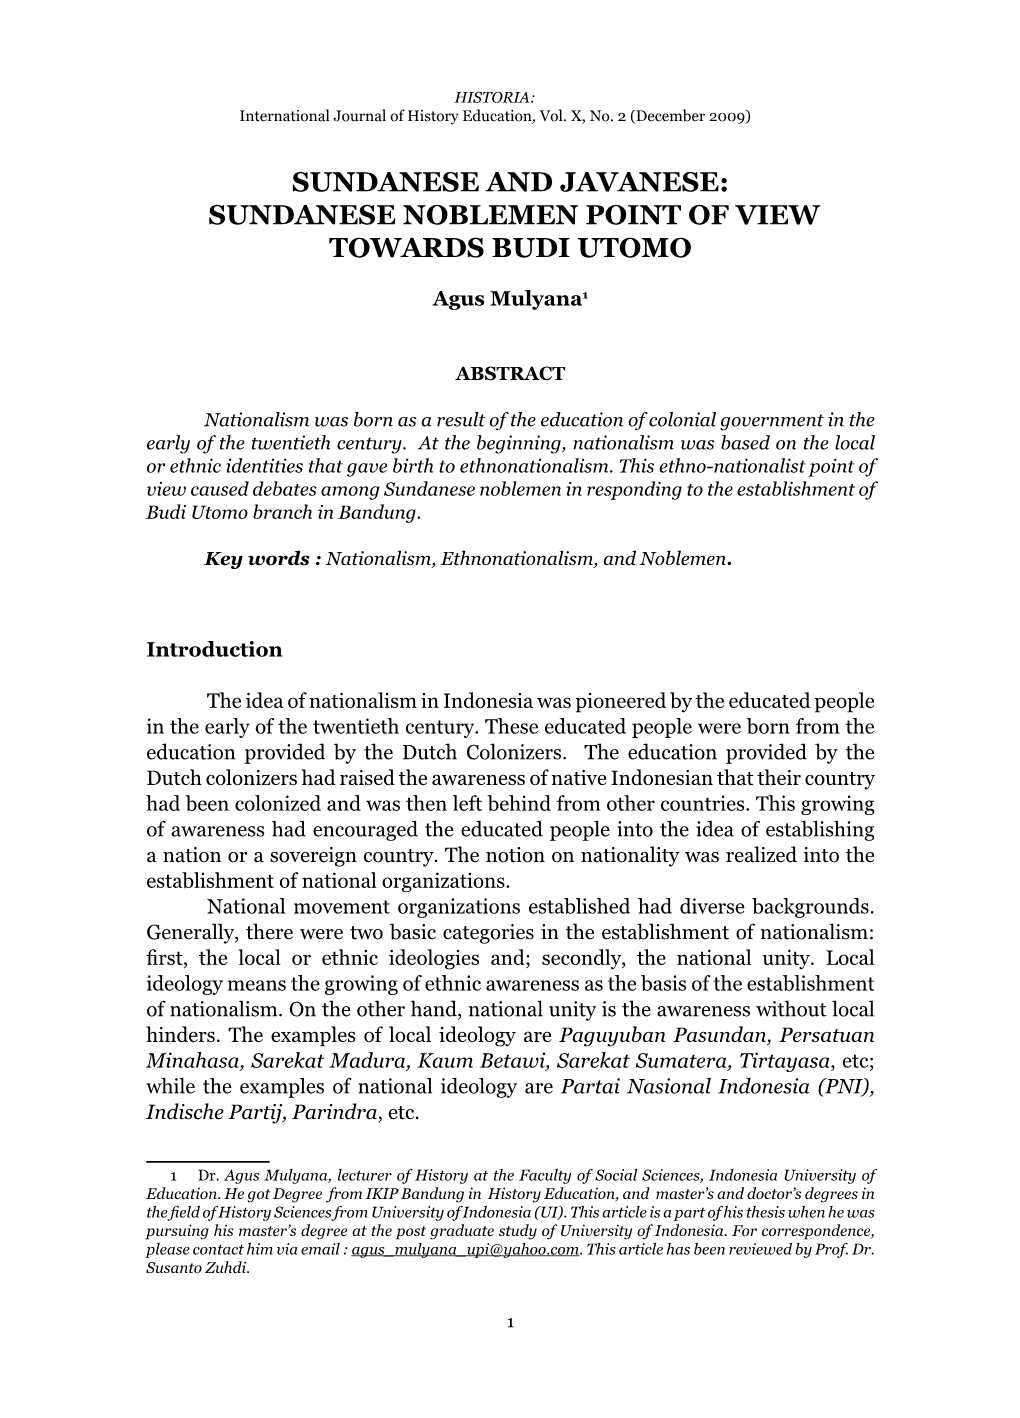 Sundanese and Javanese: Sundanese Noblemen Point of View Towards Budi Utomo